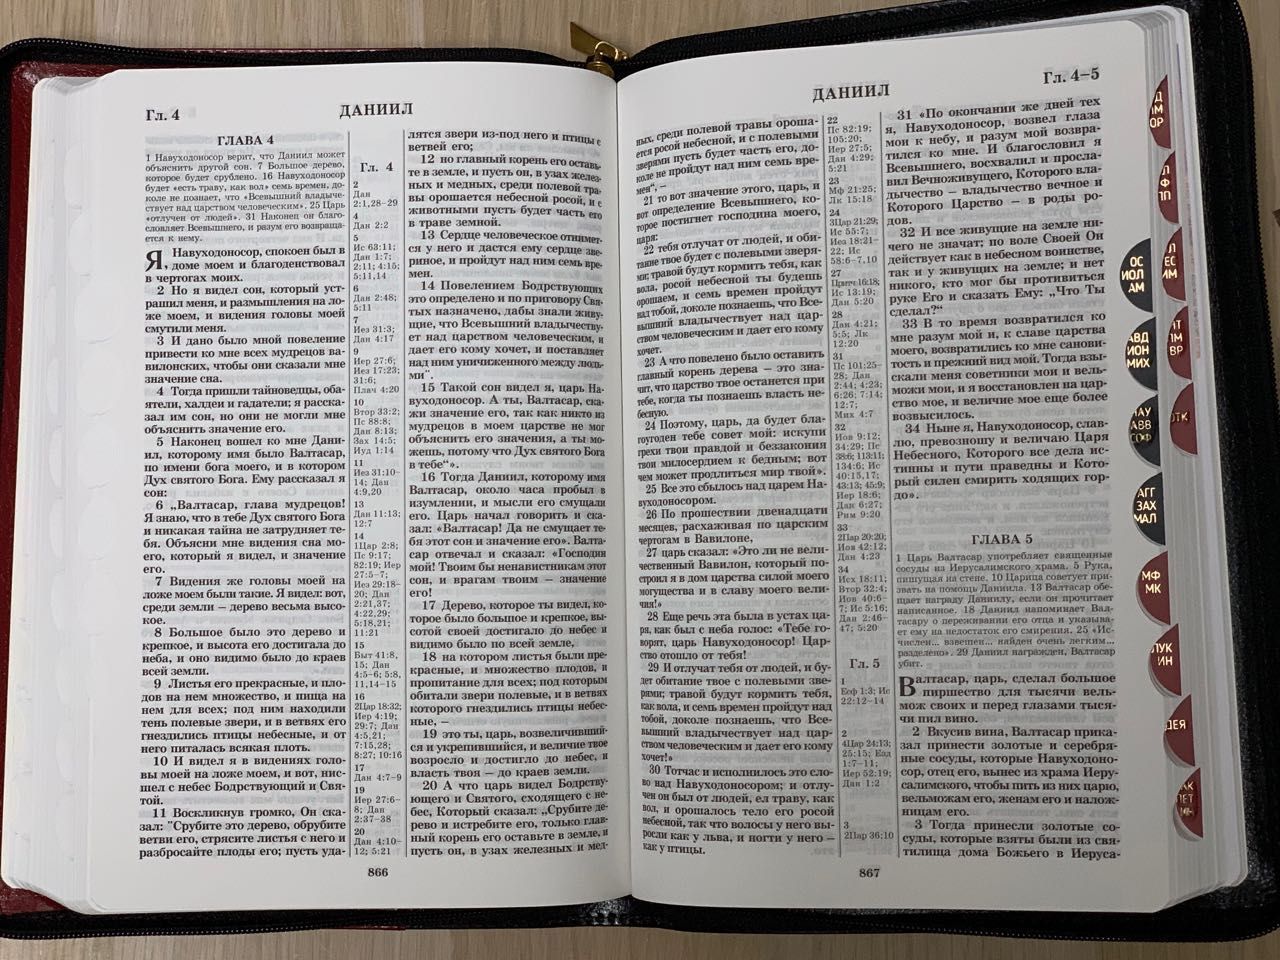 БИБЛИЯ 077zti формат, переплет из натуральной кожи на молнии с индексами, надпись серебром  "Библия", цвет темно-коричневый металлик, большой формат, 180*260 мм, цветные карты, крупный шрифт